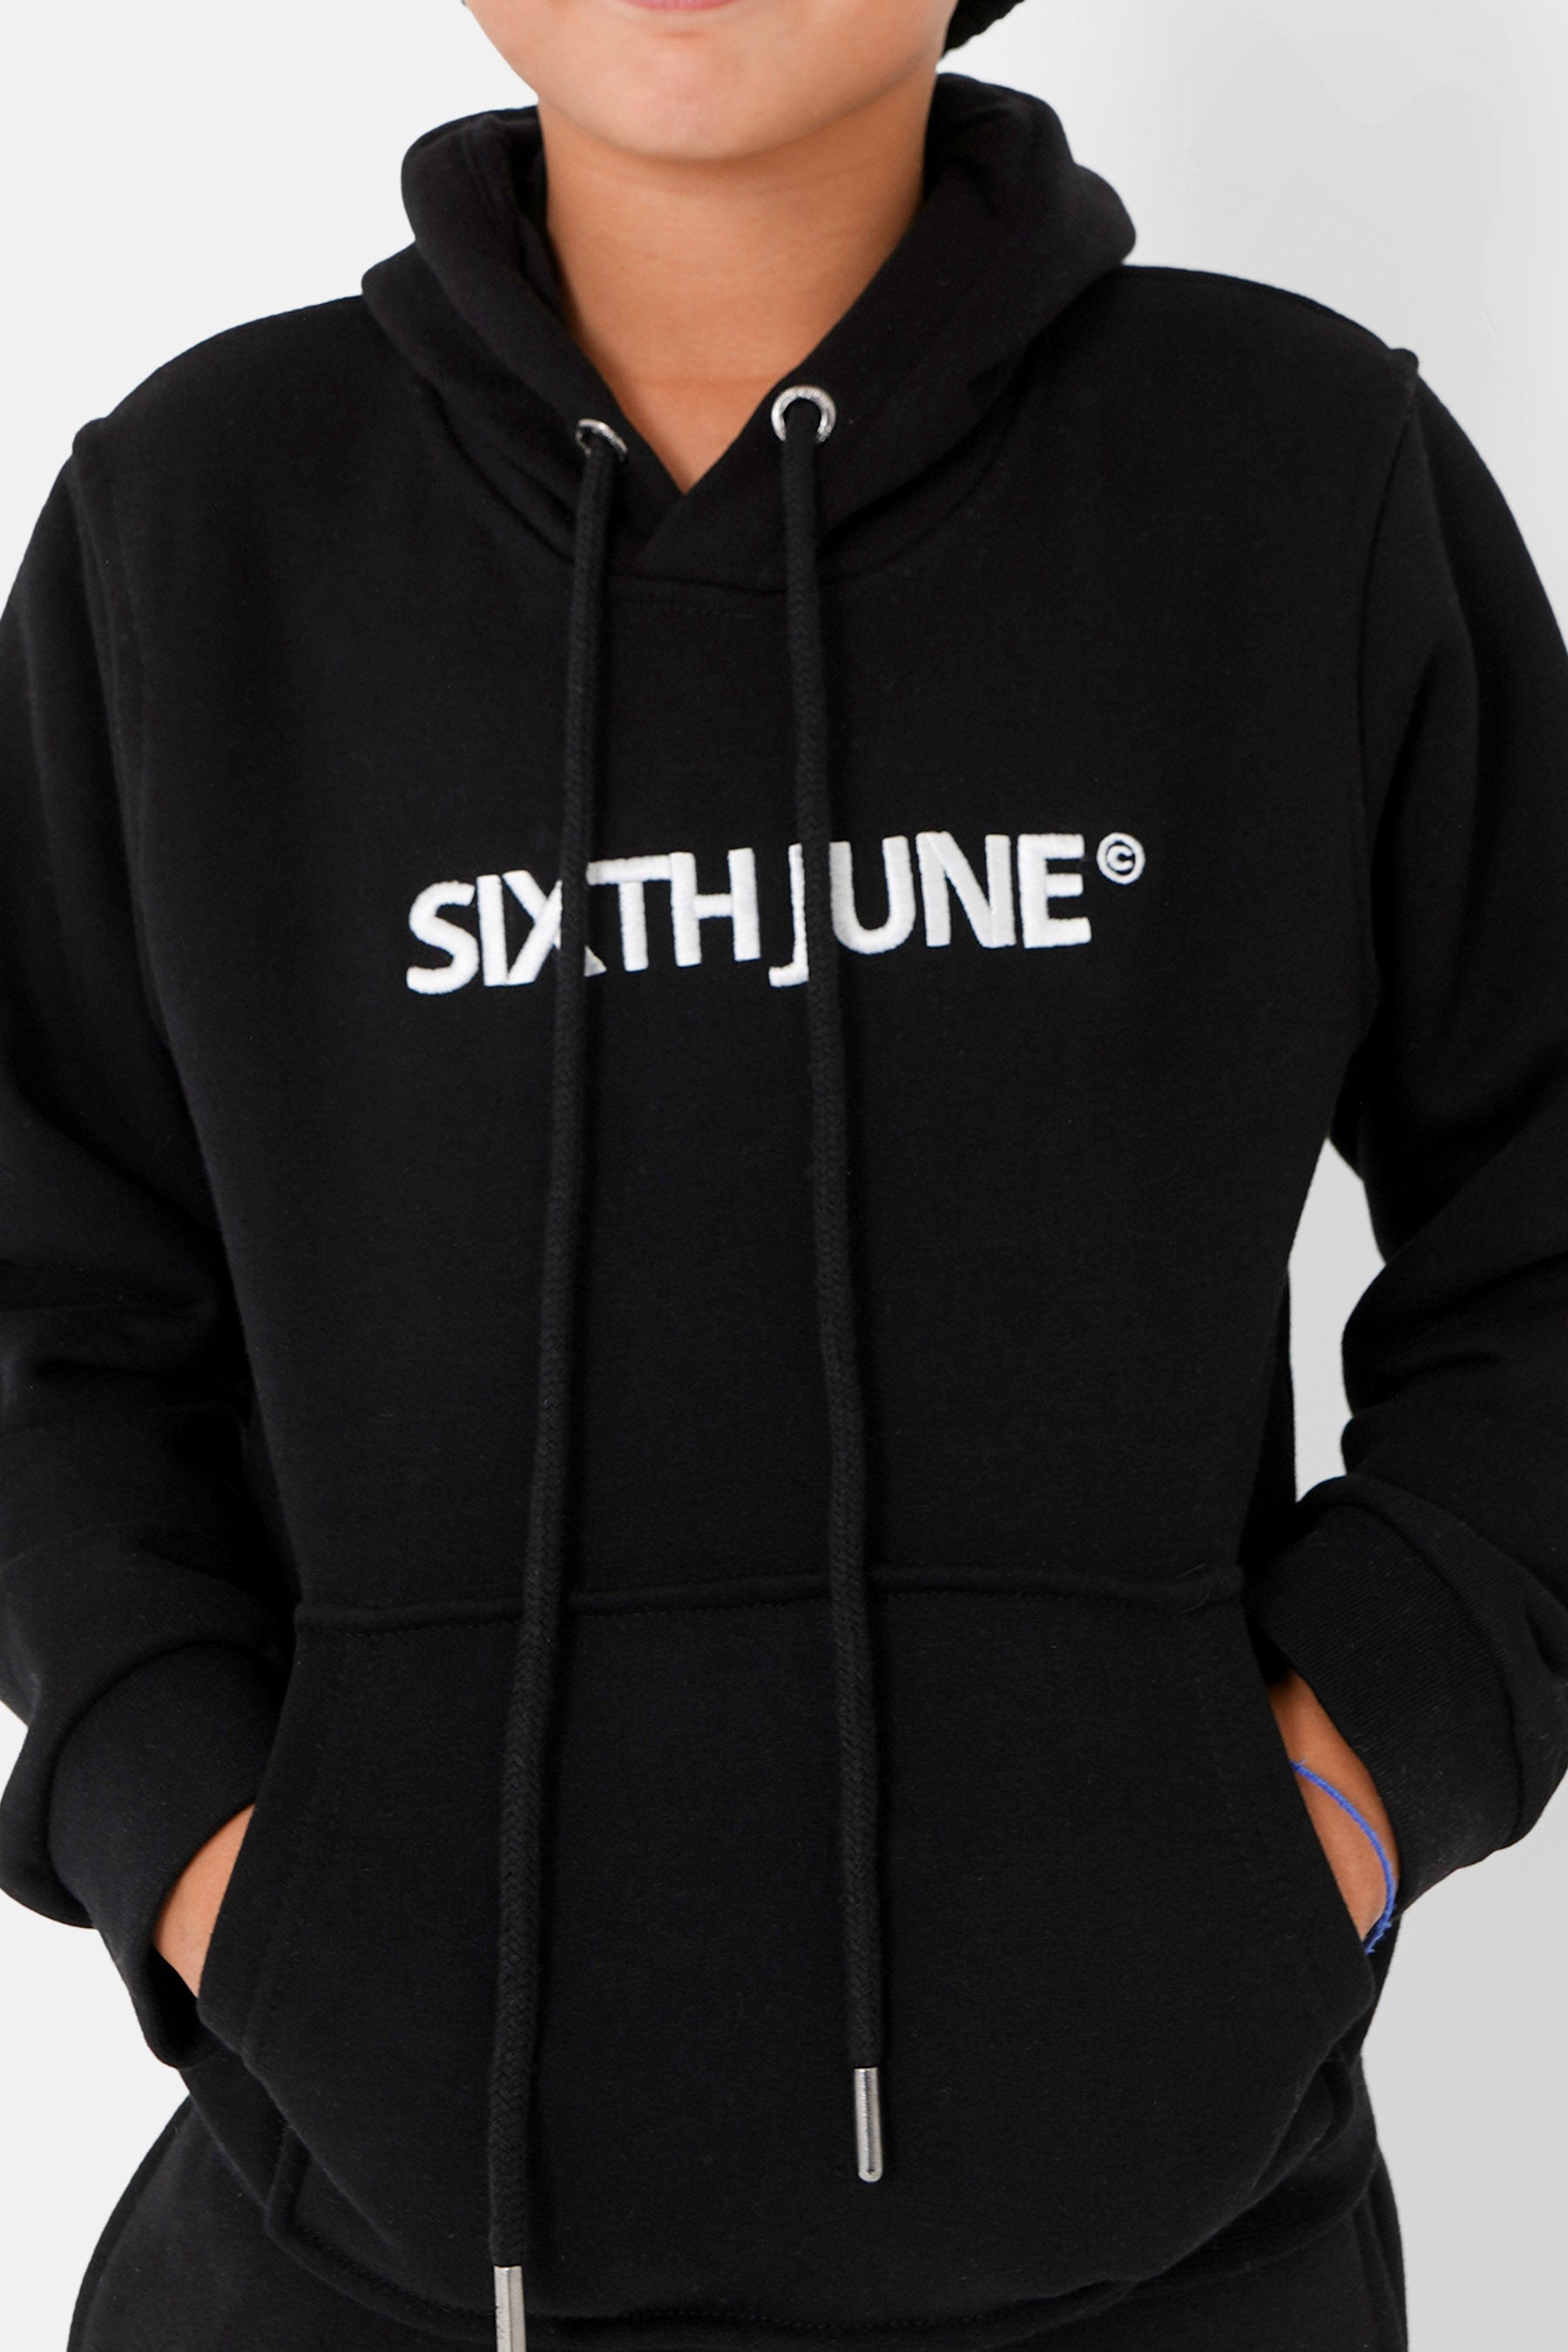 Sixth June - Sweat capuche logo brodé junior Noir